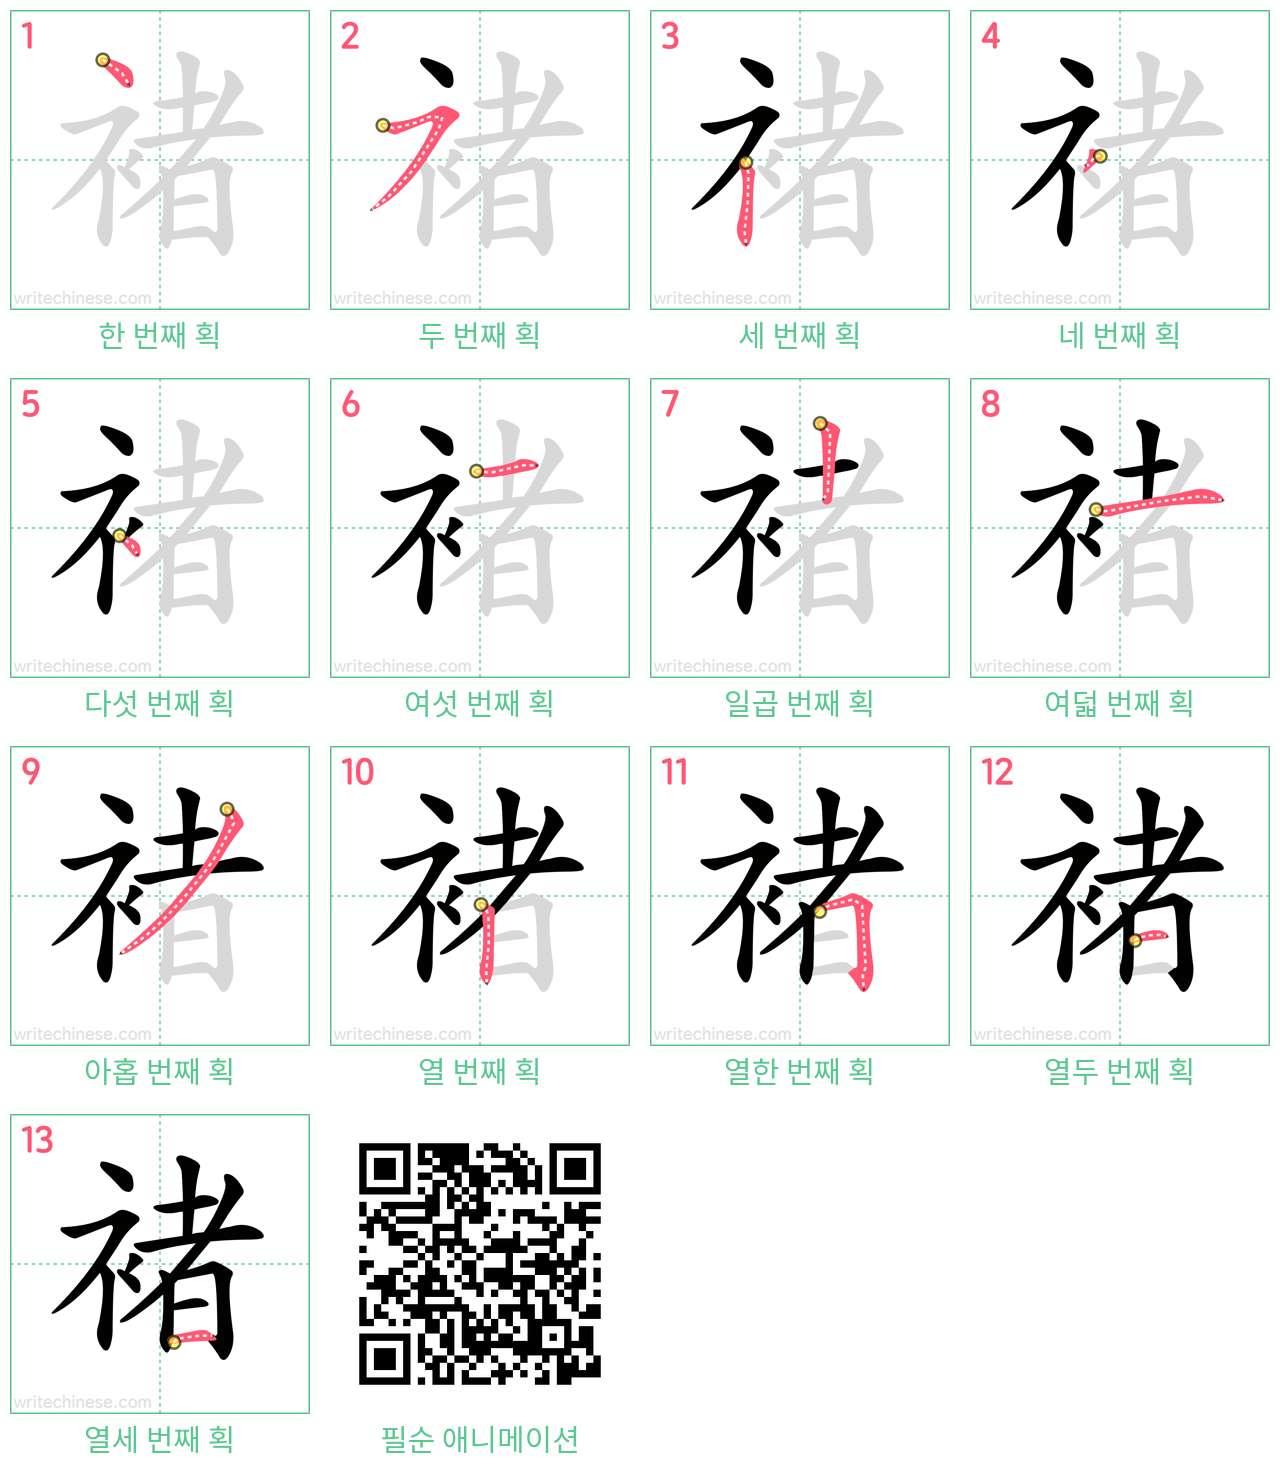 褚 step-by-step stroke order diagrams